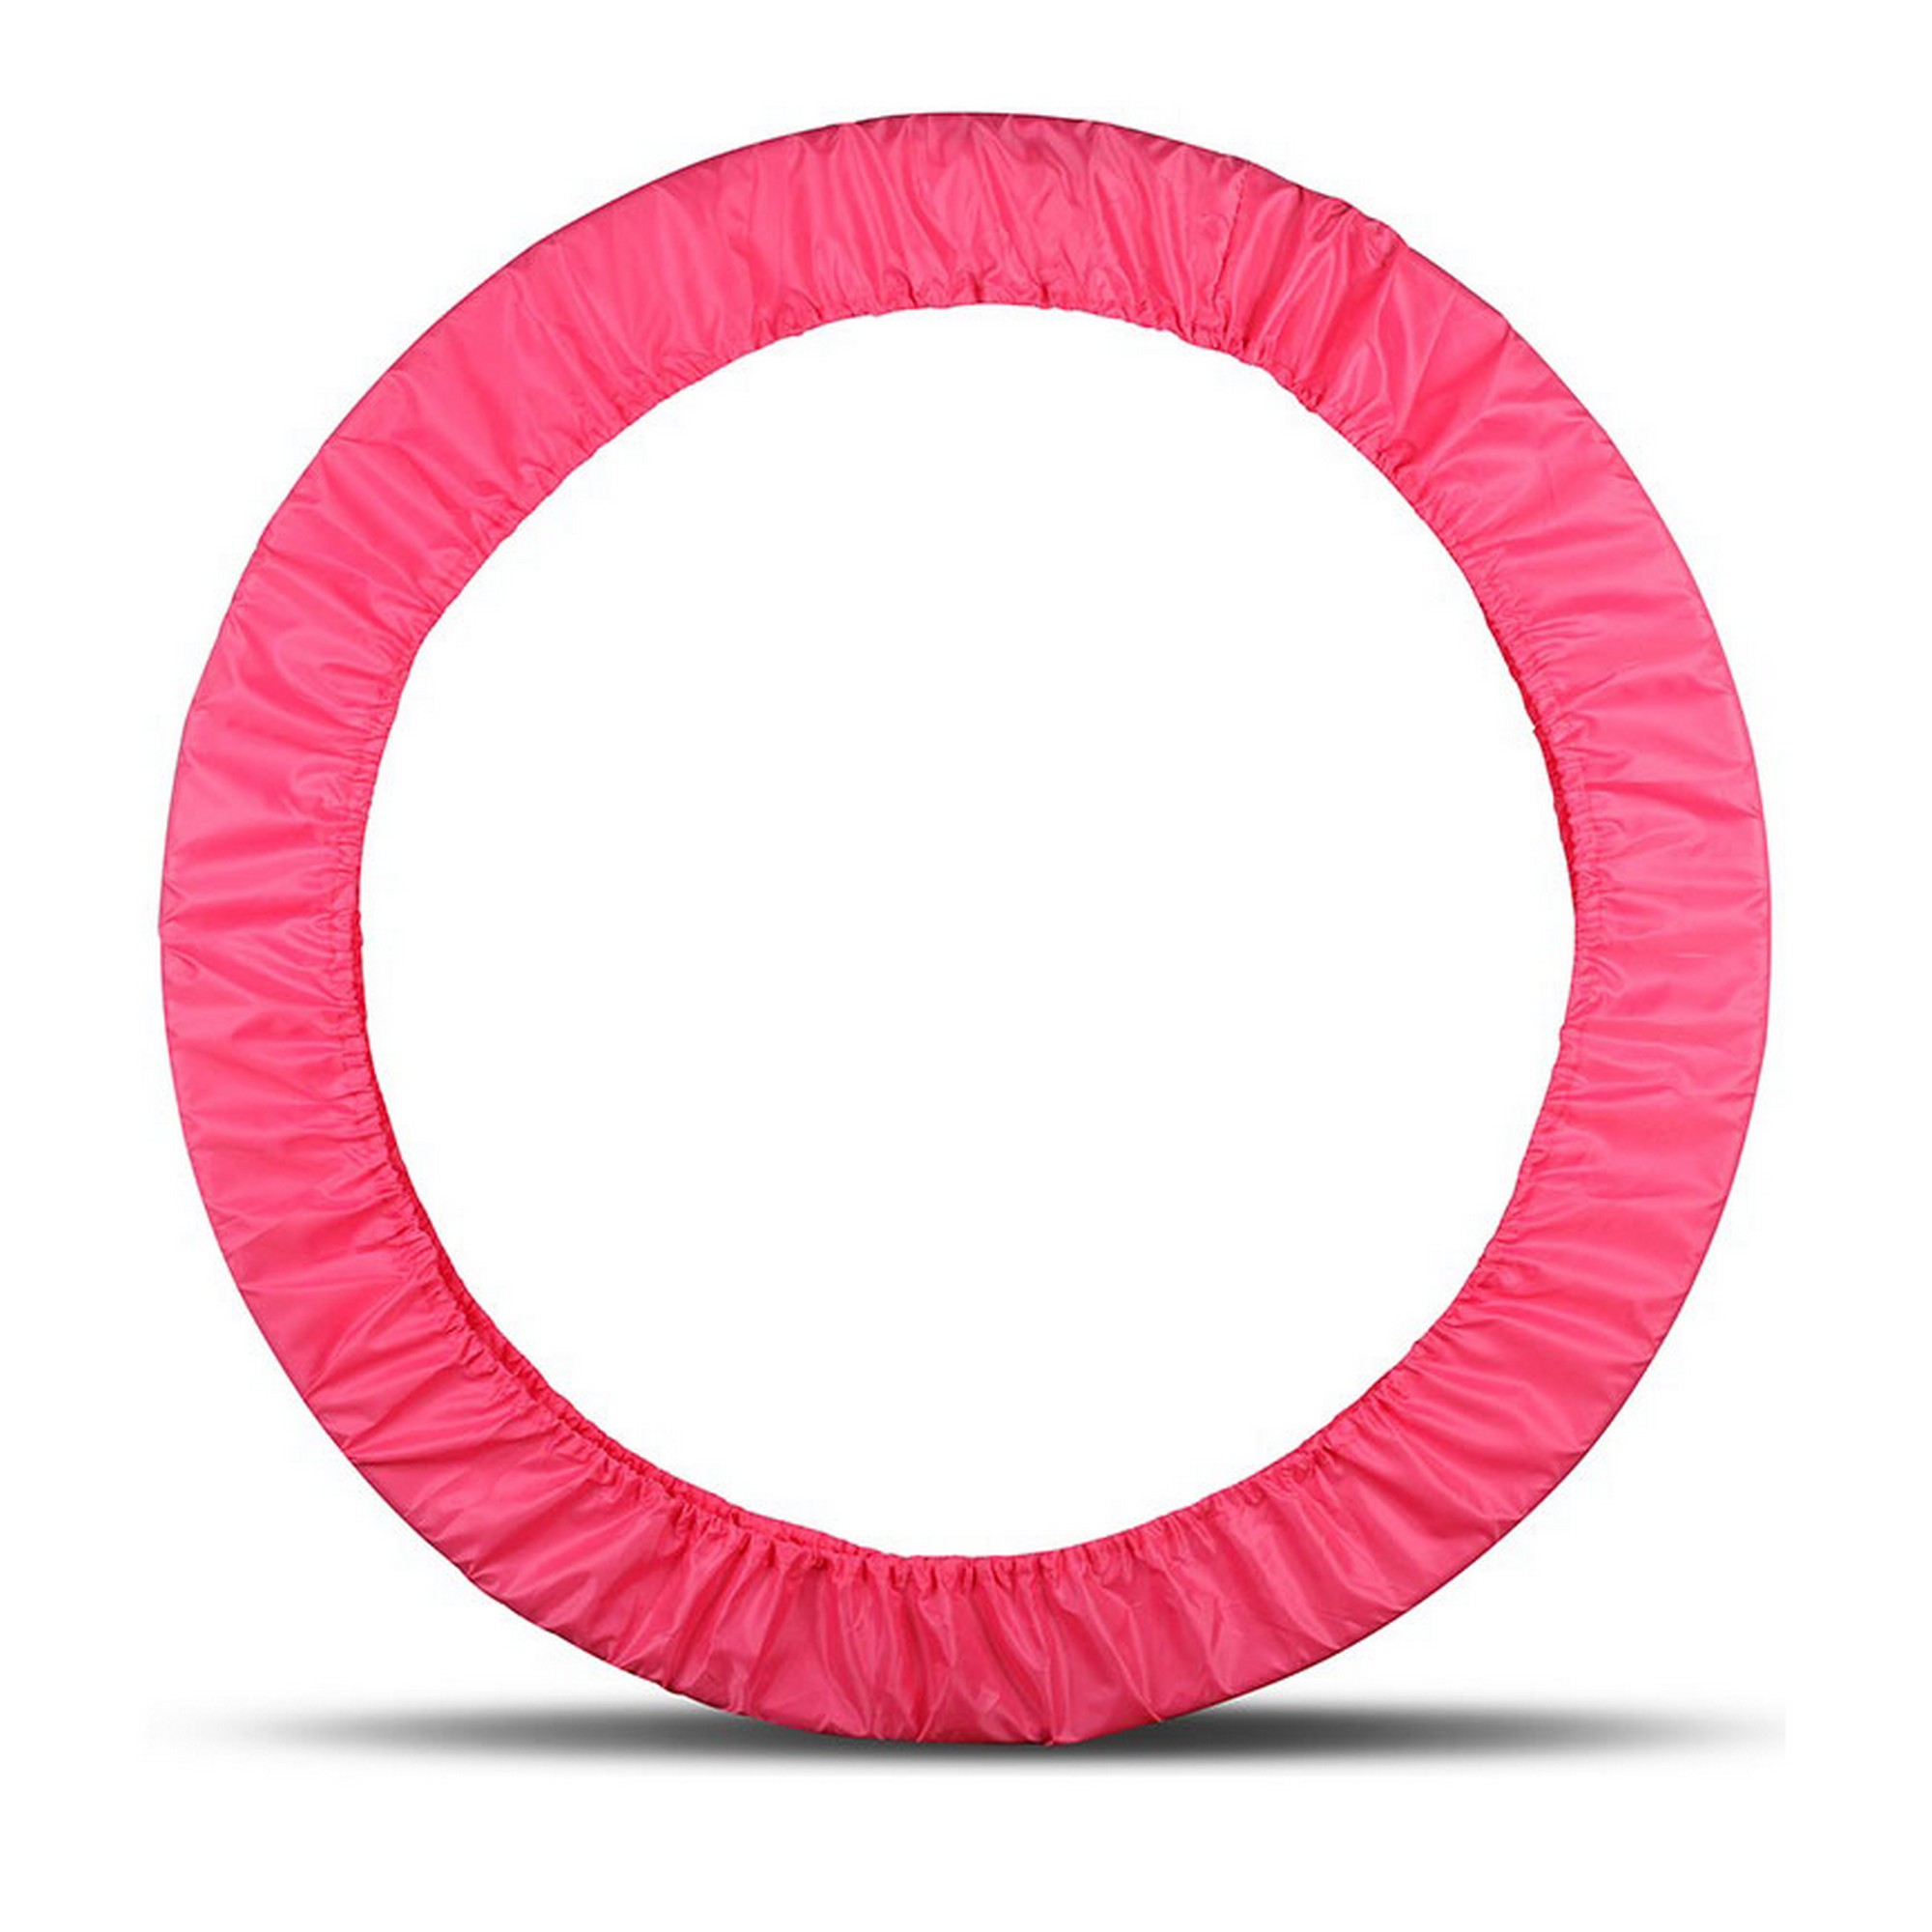 Чехол для обруча гимнастического Indigo полиэстер, 60-90см SM-084-P розовый - фото 1